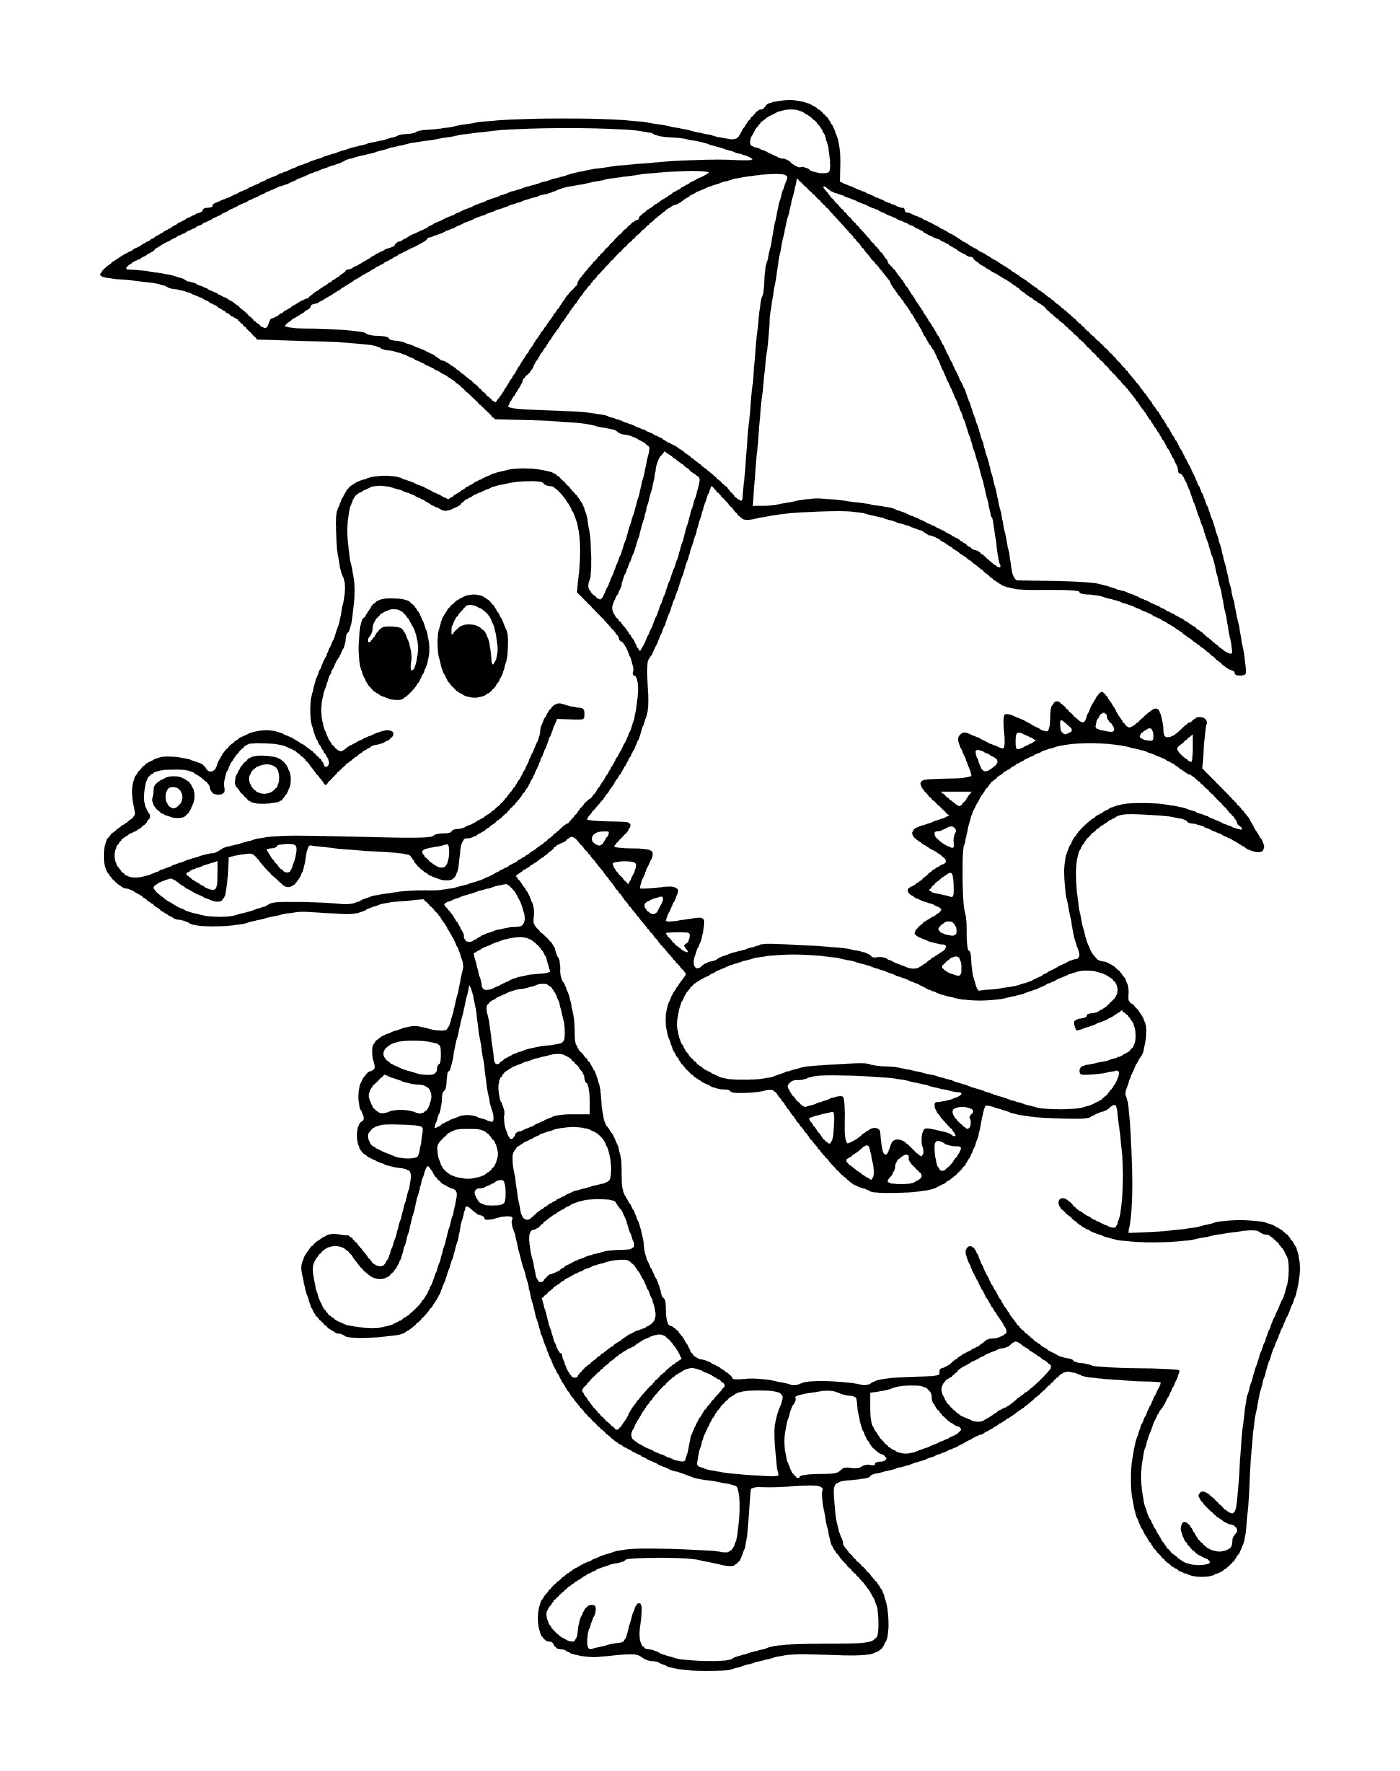  Ein Krokodil, das einen Regenschirm hält 